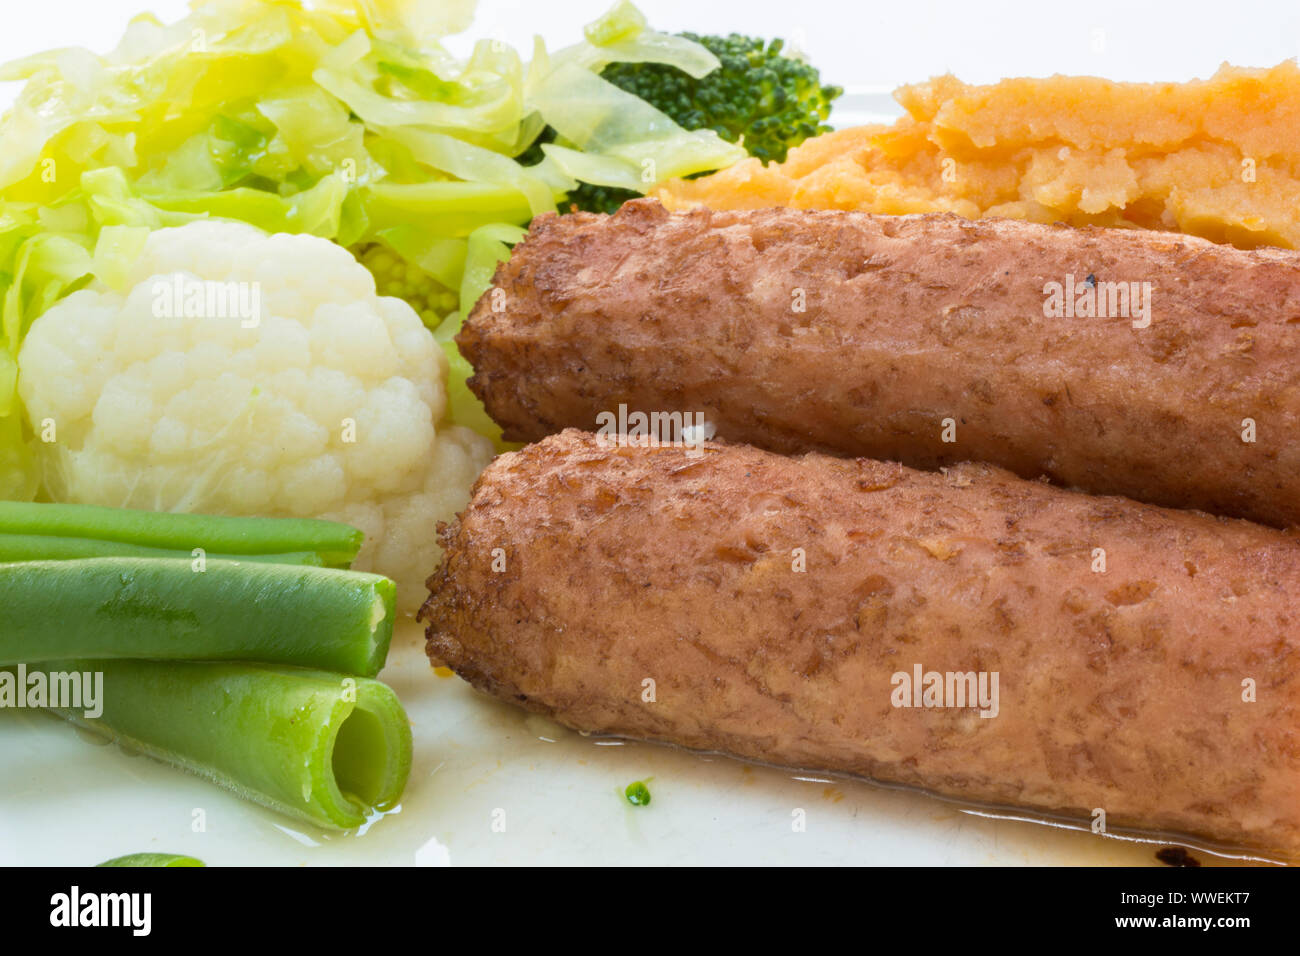 De viande plats végétariens et végétaliens les saucisses. Sur une assiette de légumes - haricots verts, chou-fleur, chou, brocoli et pommes de terre en purée. Banque D'Images